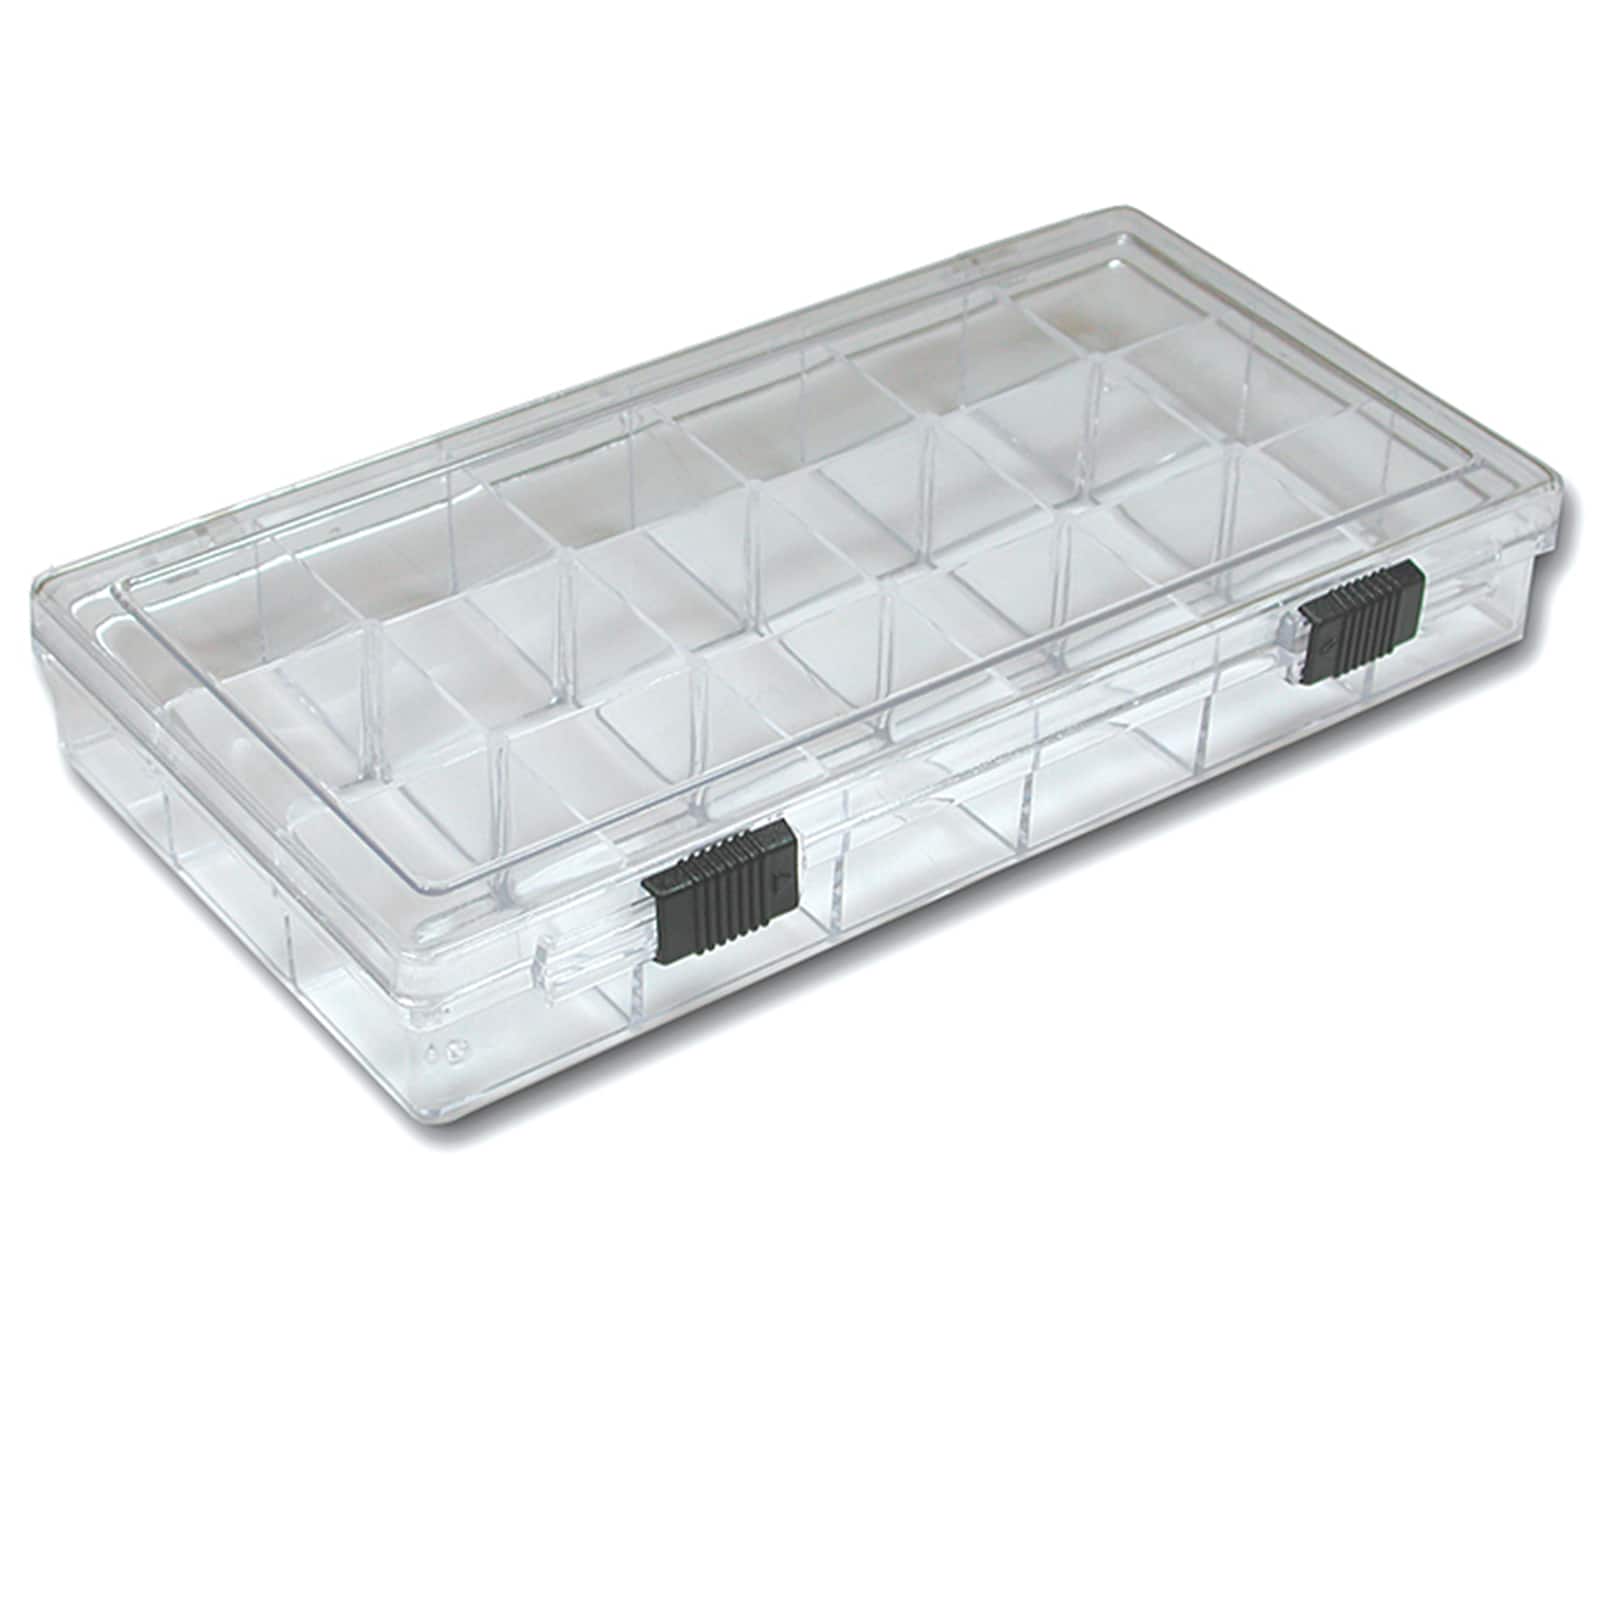 2182 – 18 Compartment Organizer Box